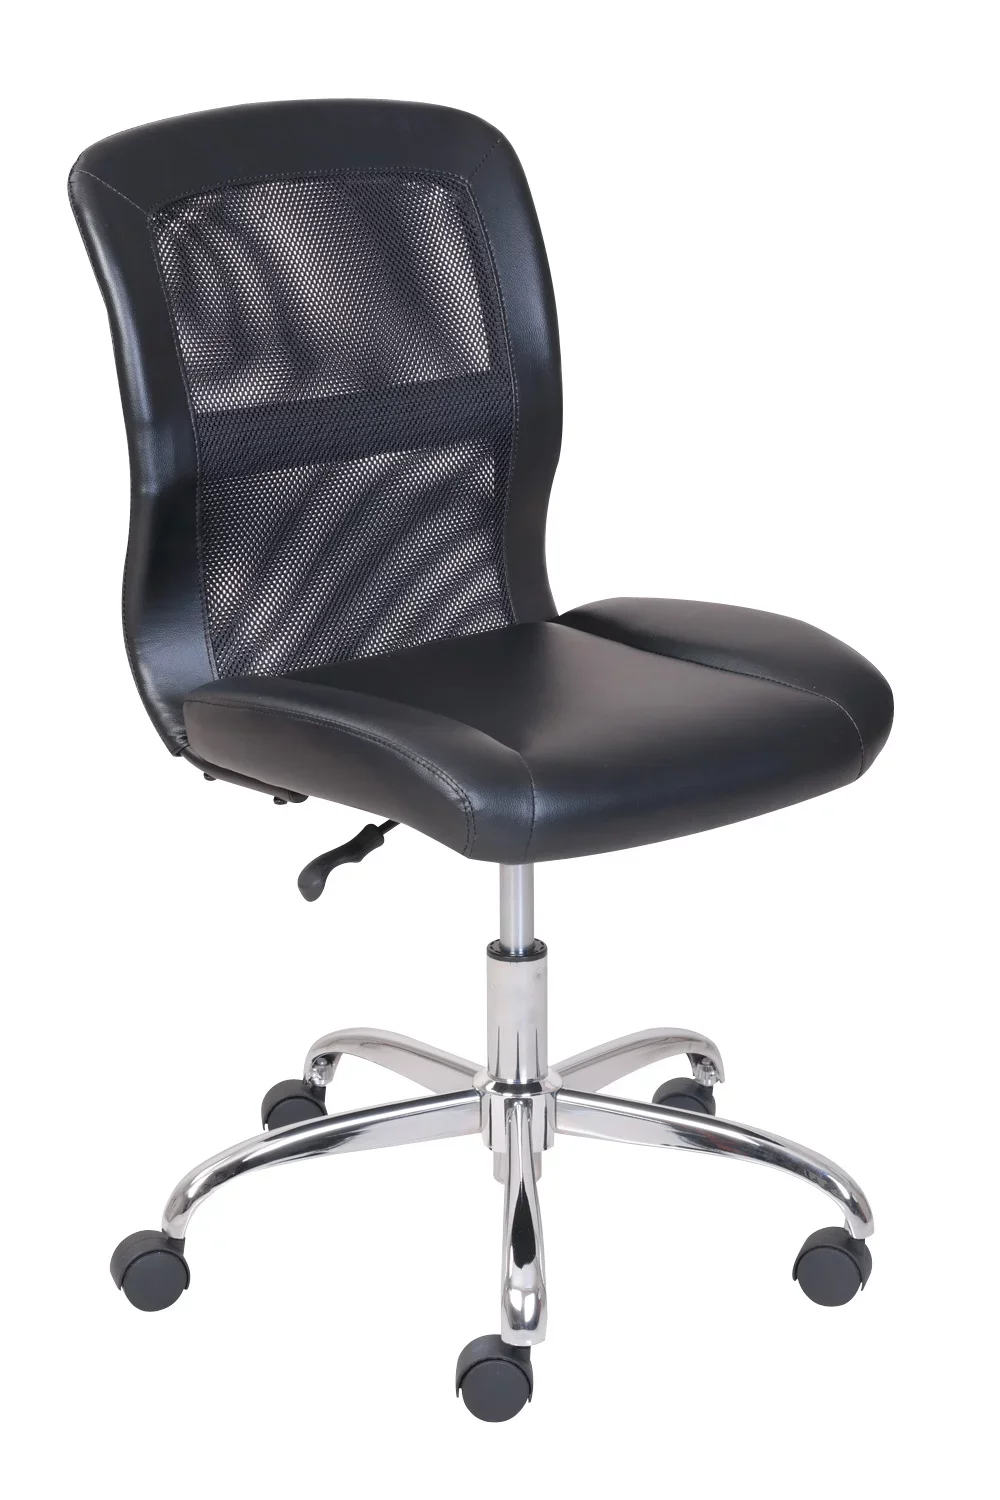 כנס כסאות אמצע הגב, ויניל, רשת המשימה הכיסא במשרד, שחור - 3